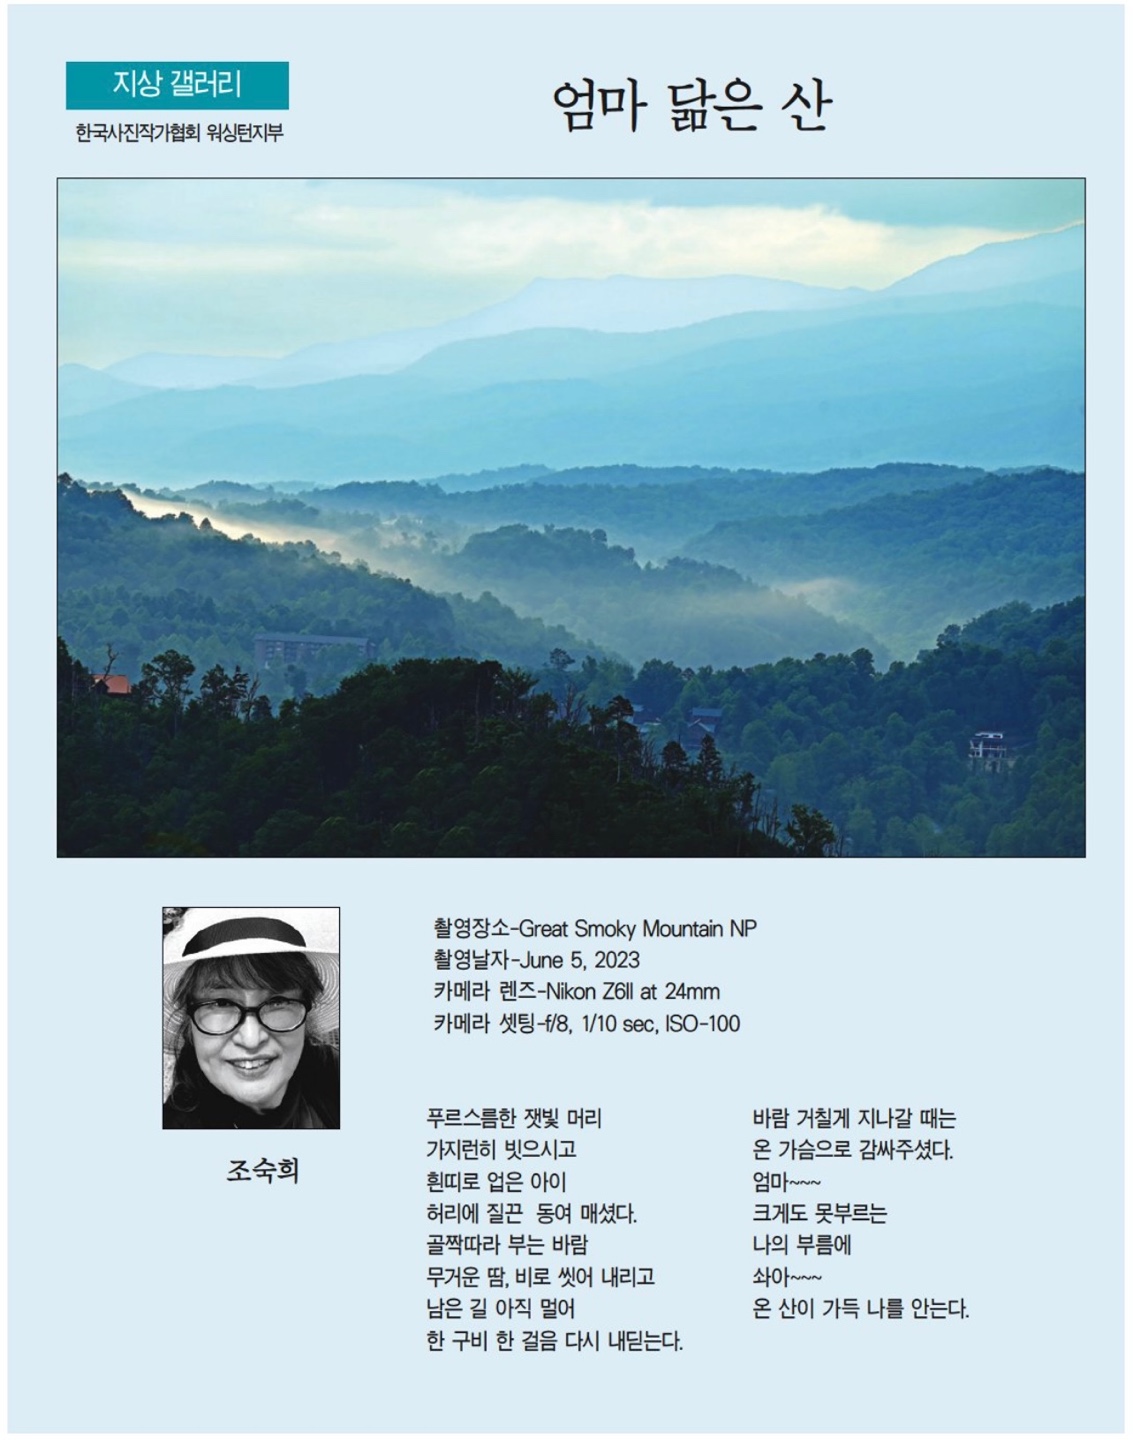 엄마 닮은 산. 조숙희.9월 14일 2023년. 한국일보